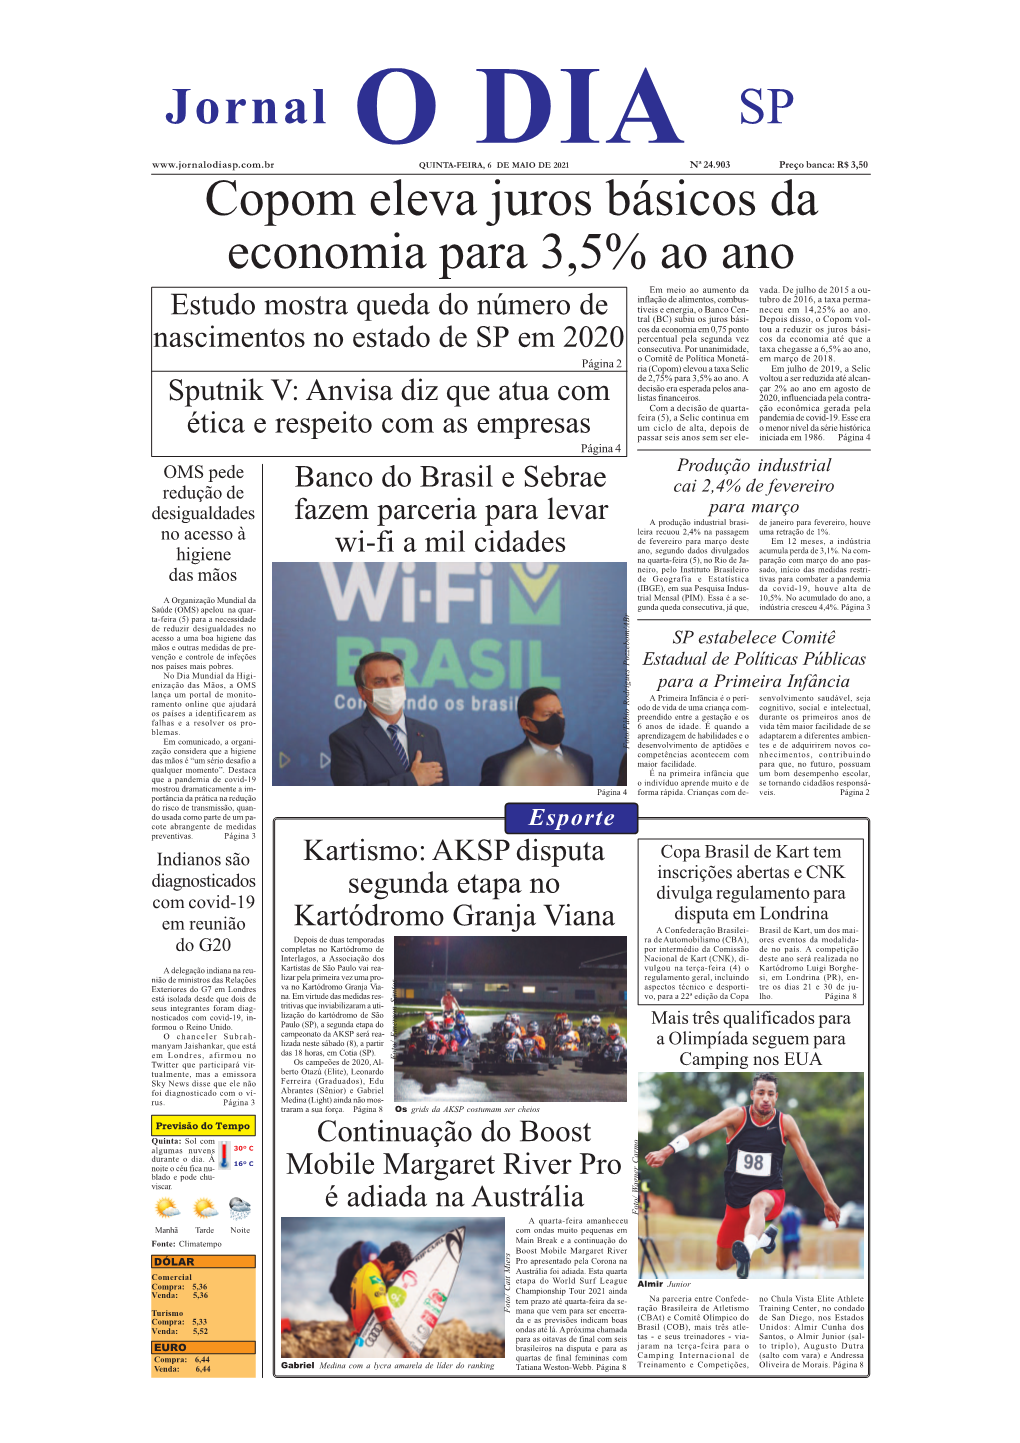 Copom Eleva Juros Básicos Da Economia Para 3,5% Ao Ano Jornal